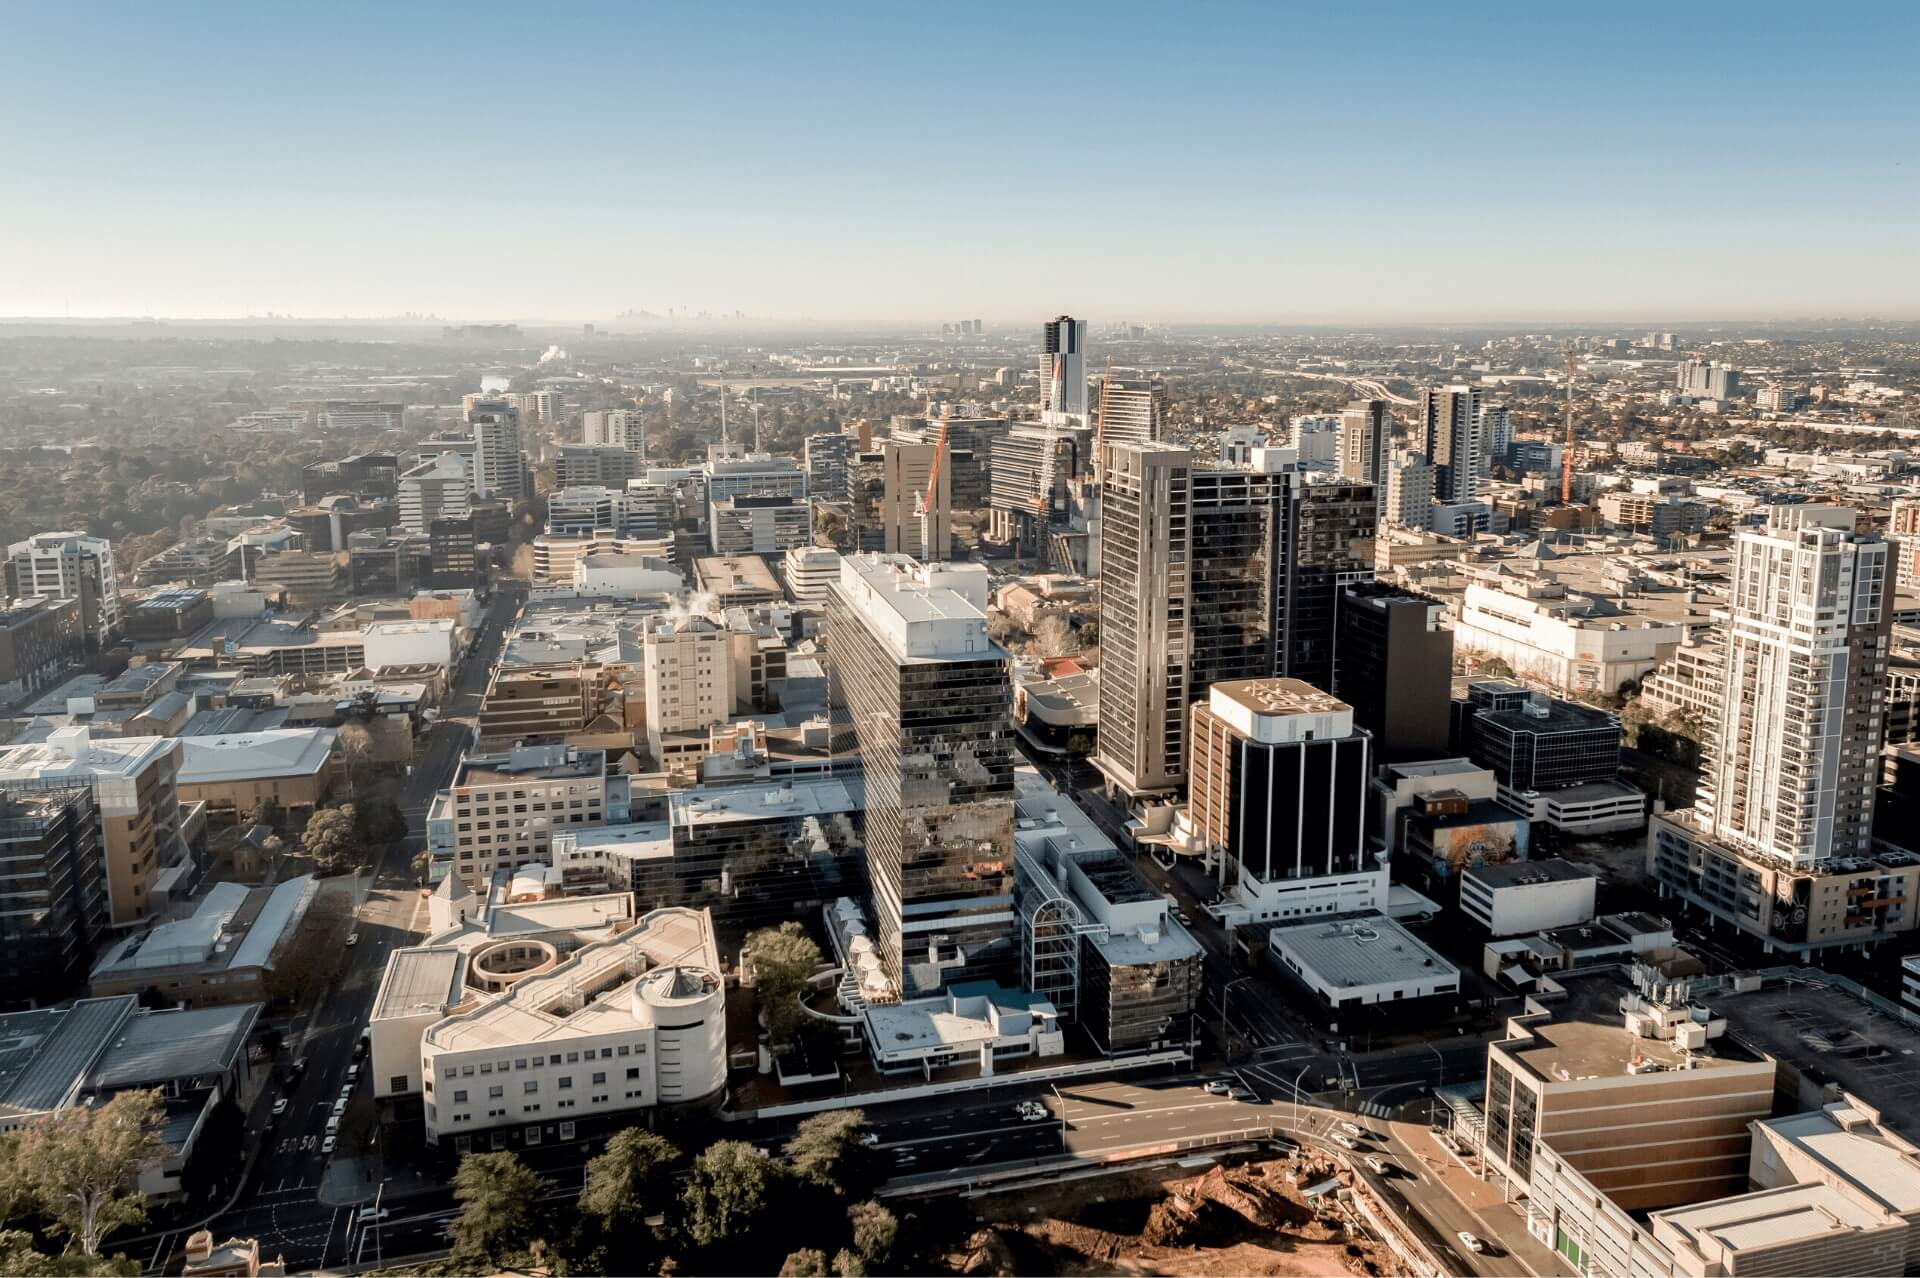 Overview of Parramatta